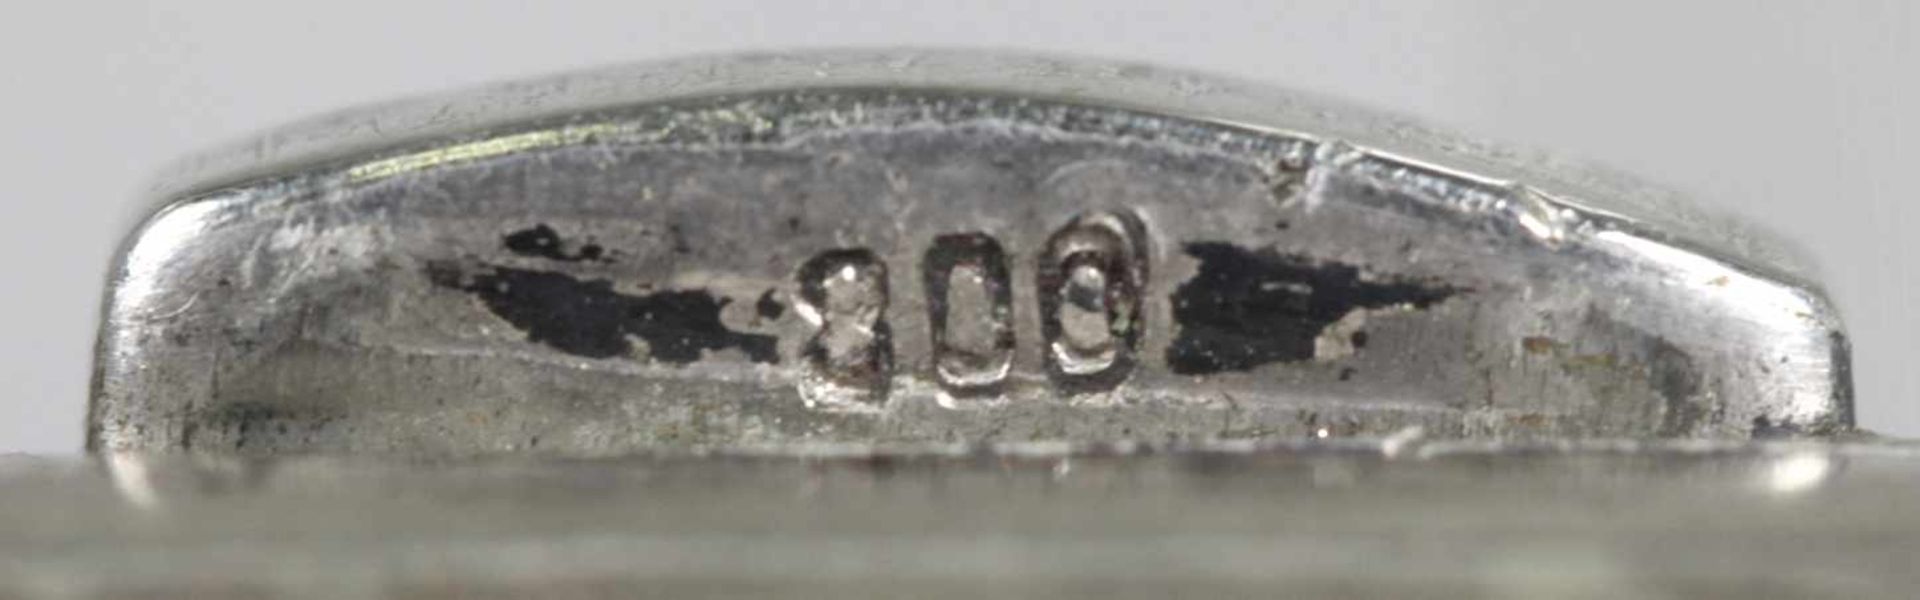 Zigaretten-Etui, 1. Hälfte 20. Jh., Silber 800, rechteckig, scharniert, Wandung reichverziert mit - Bild 4 aus 4